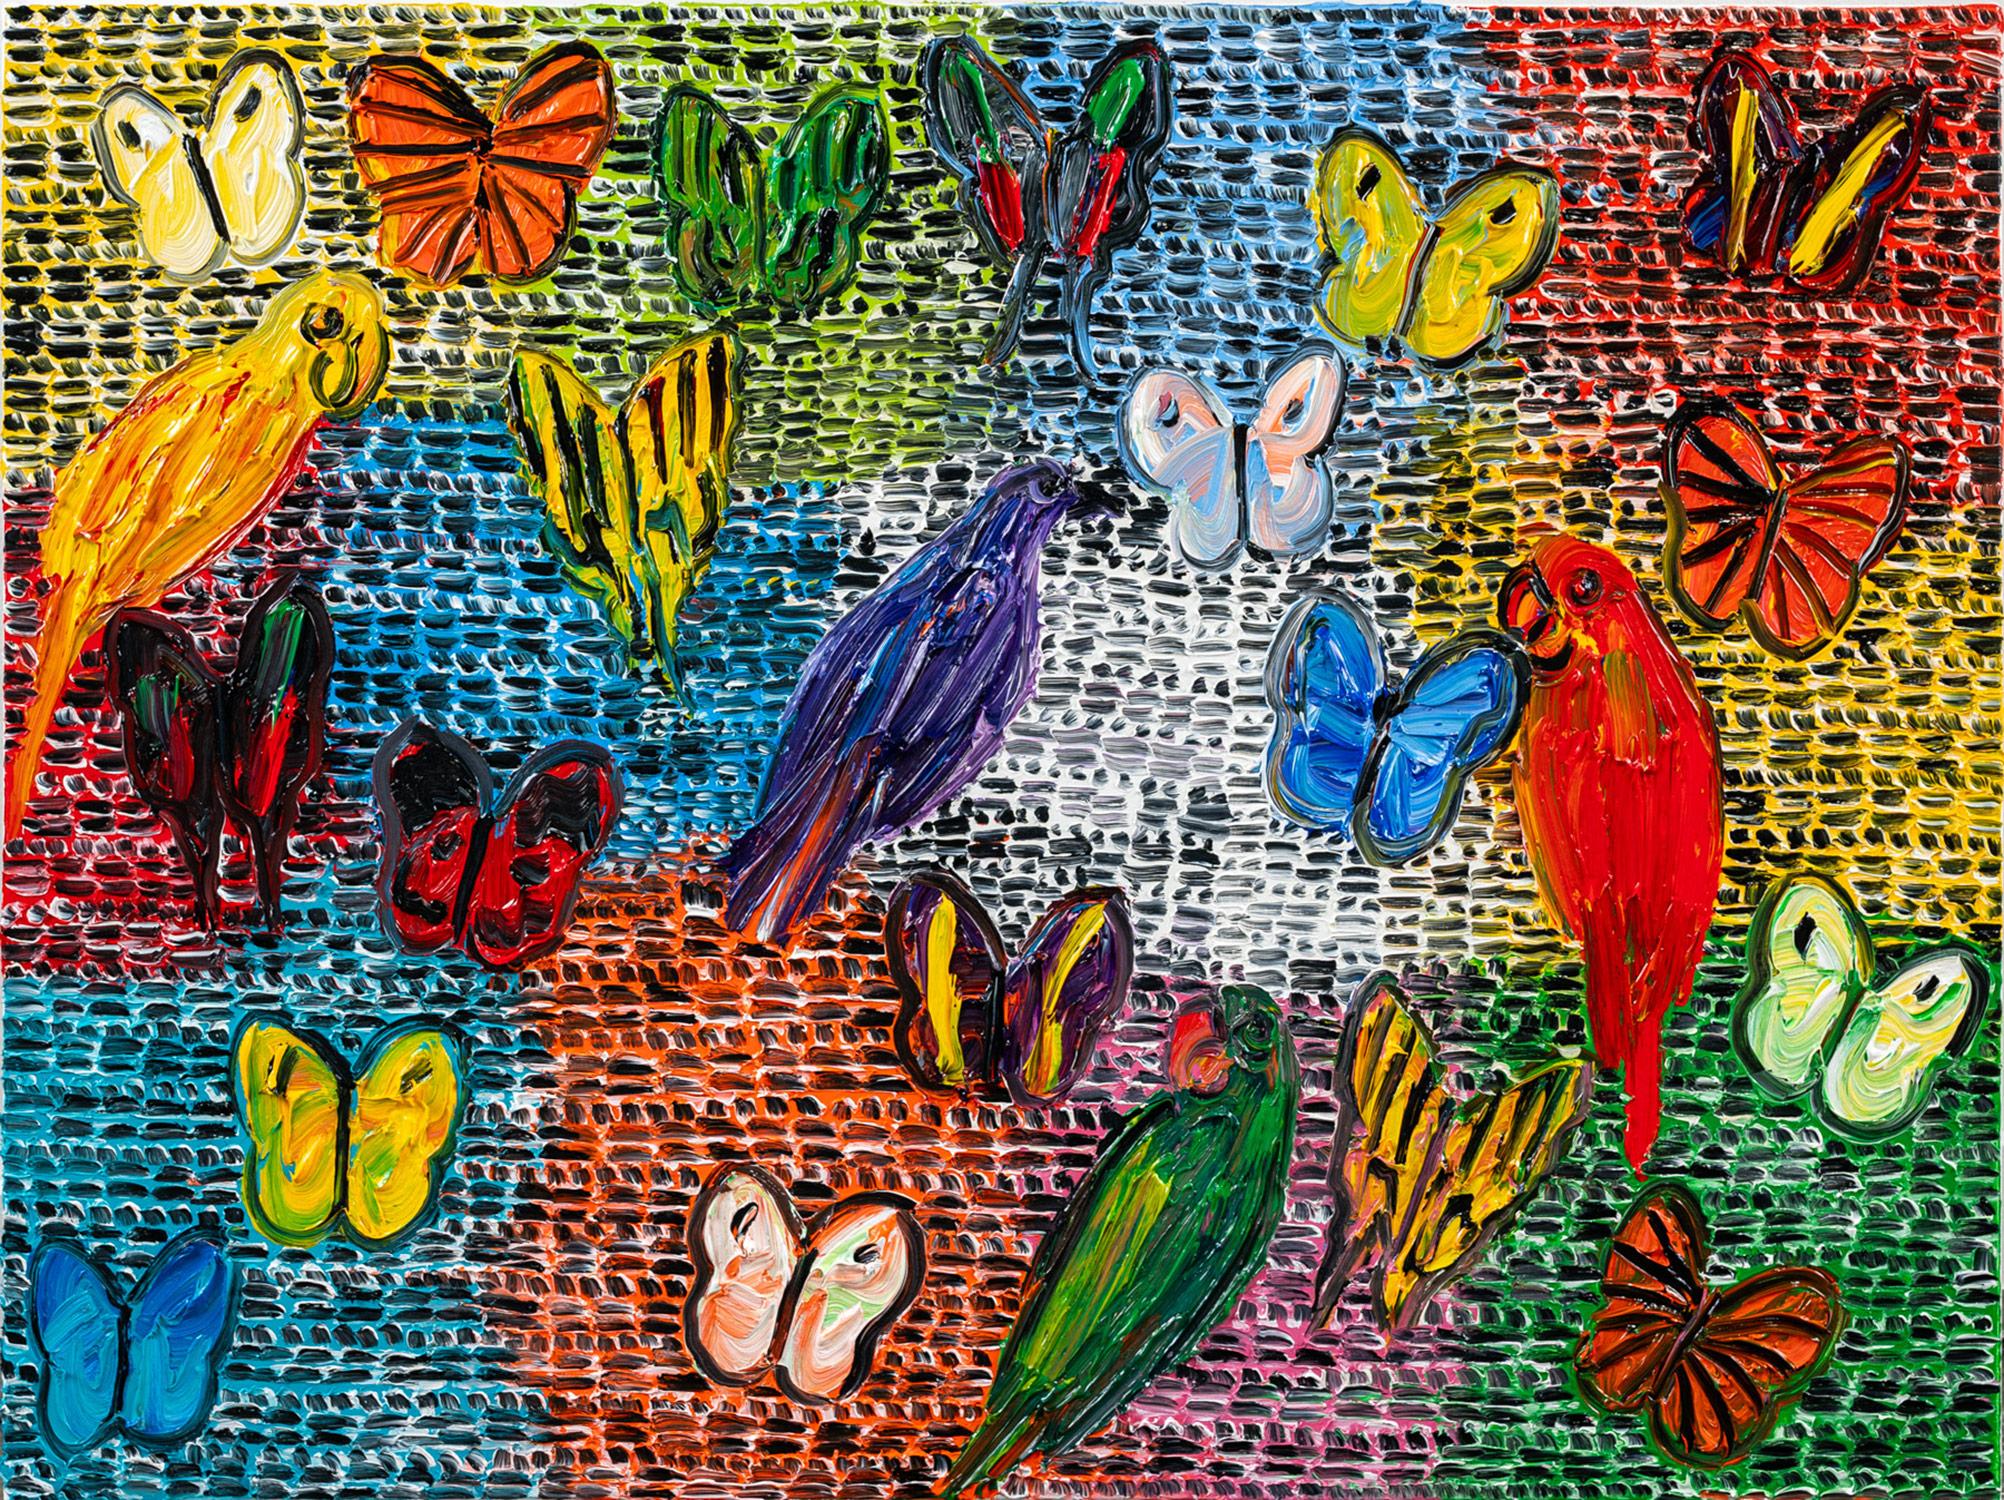 « Gardiens et papillons », peinture à l'huile sur toile multicolore avec oiseaux